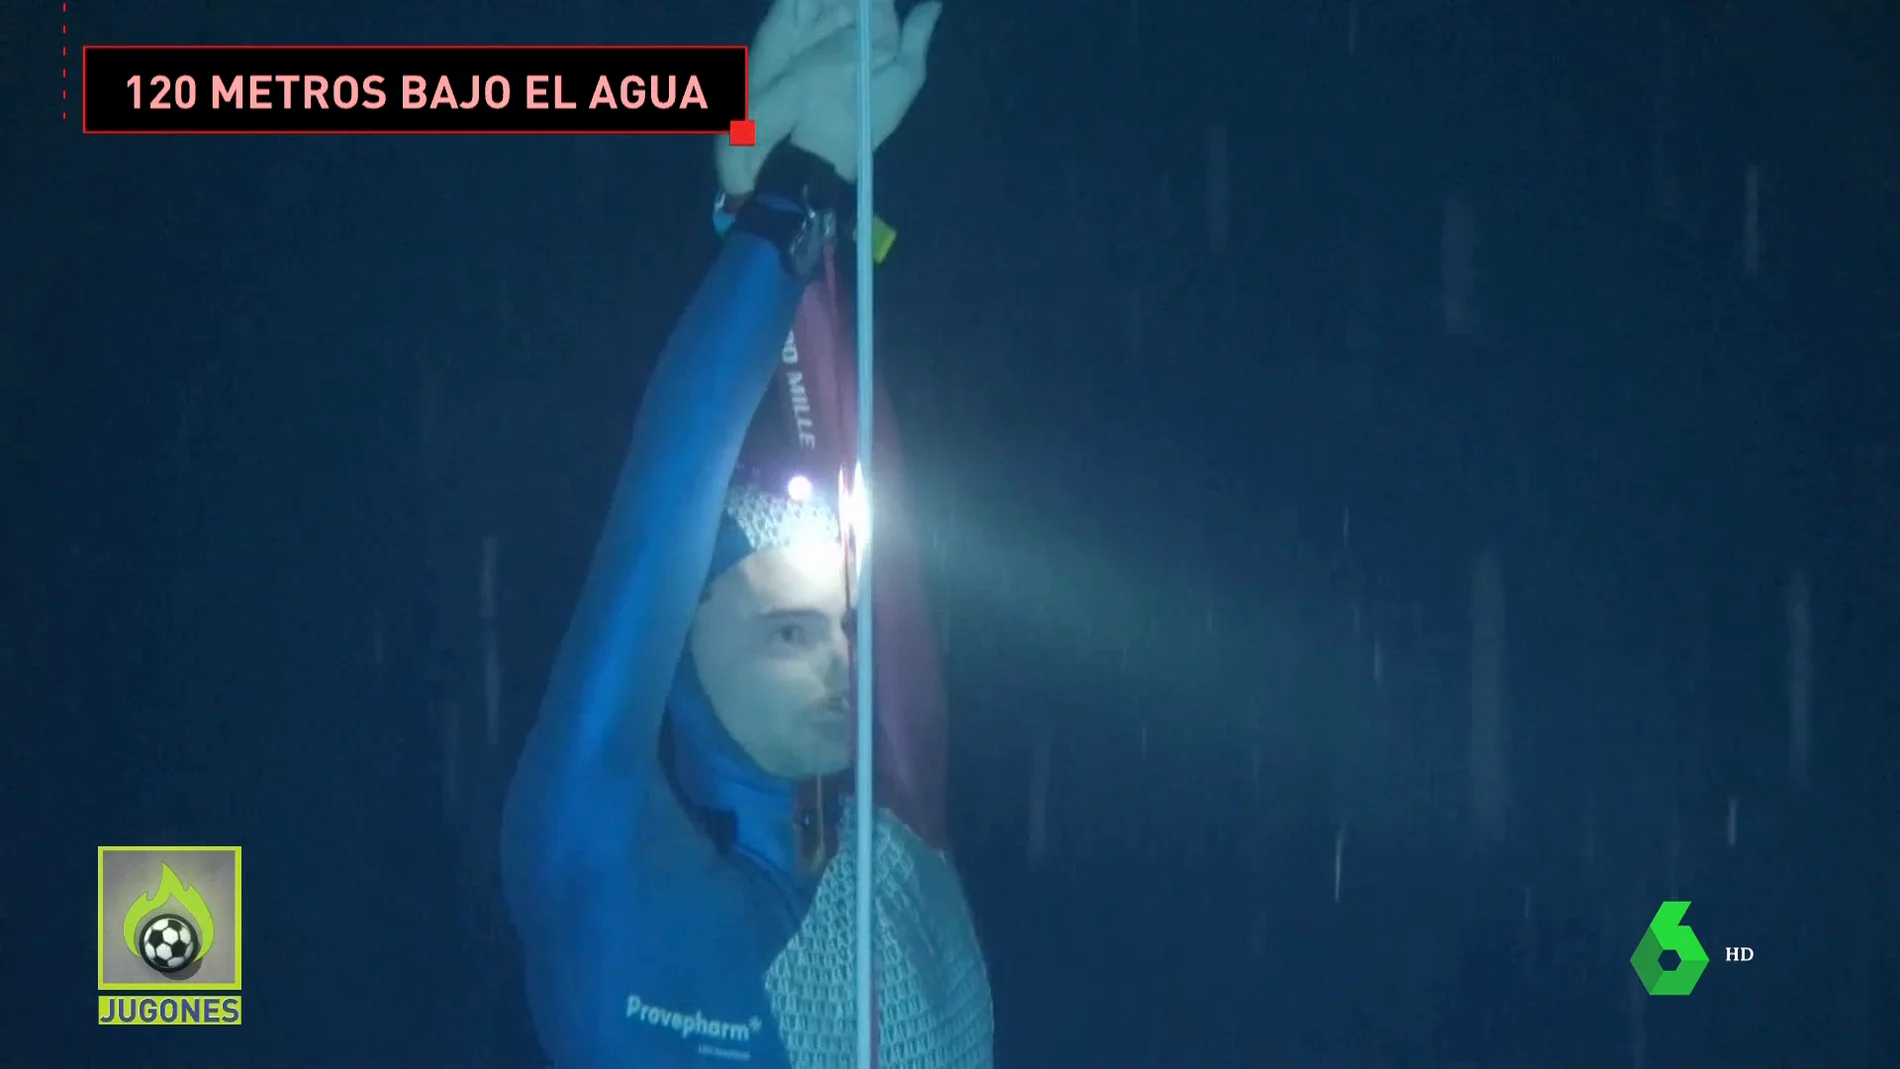 Nuevo récord de Arnaud Jerald: 3 minutos y 34 segundos sin respirar sumergido a 120 metros bajo el agua